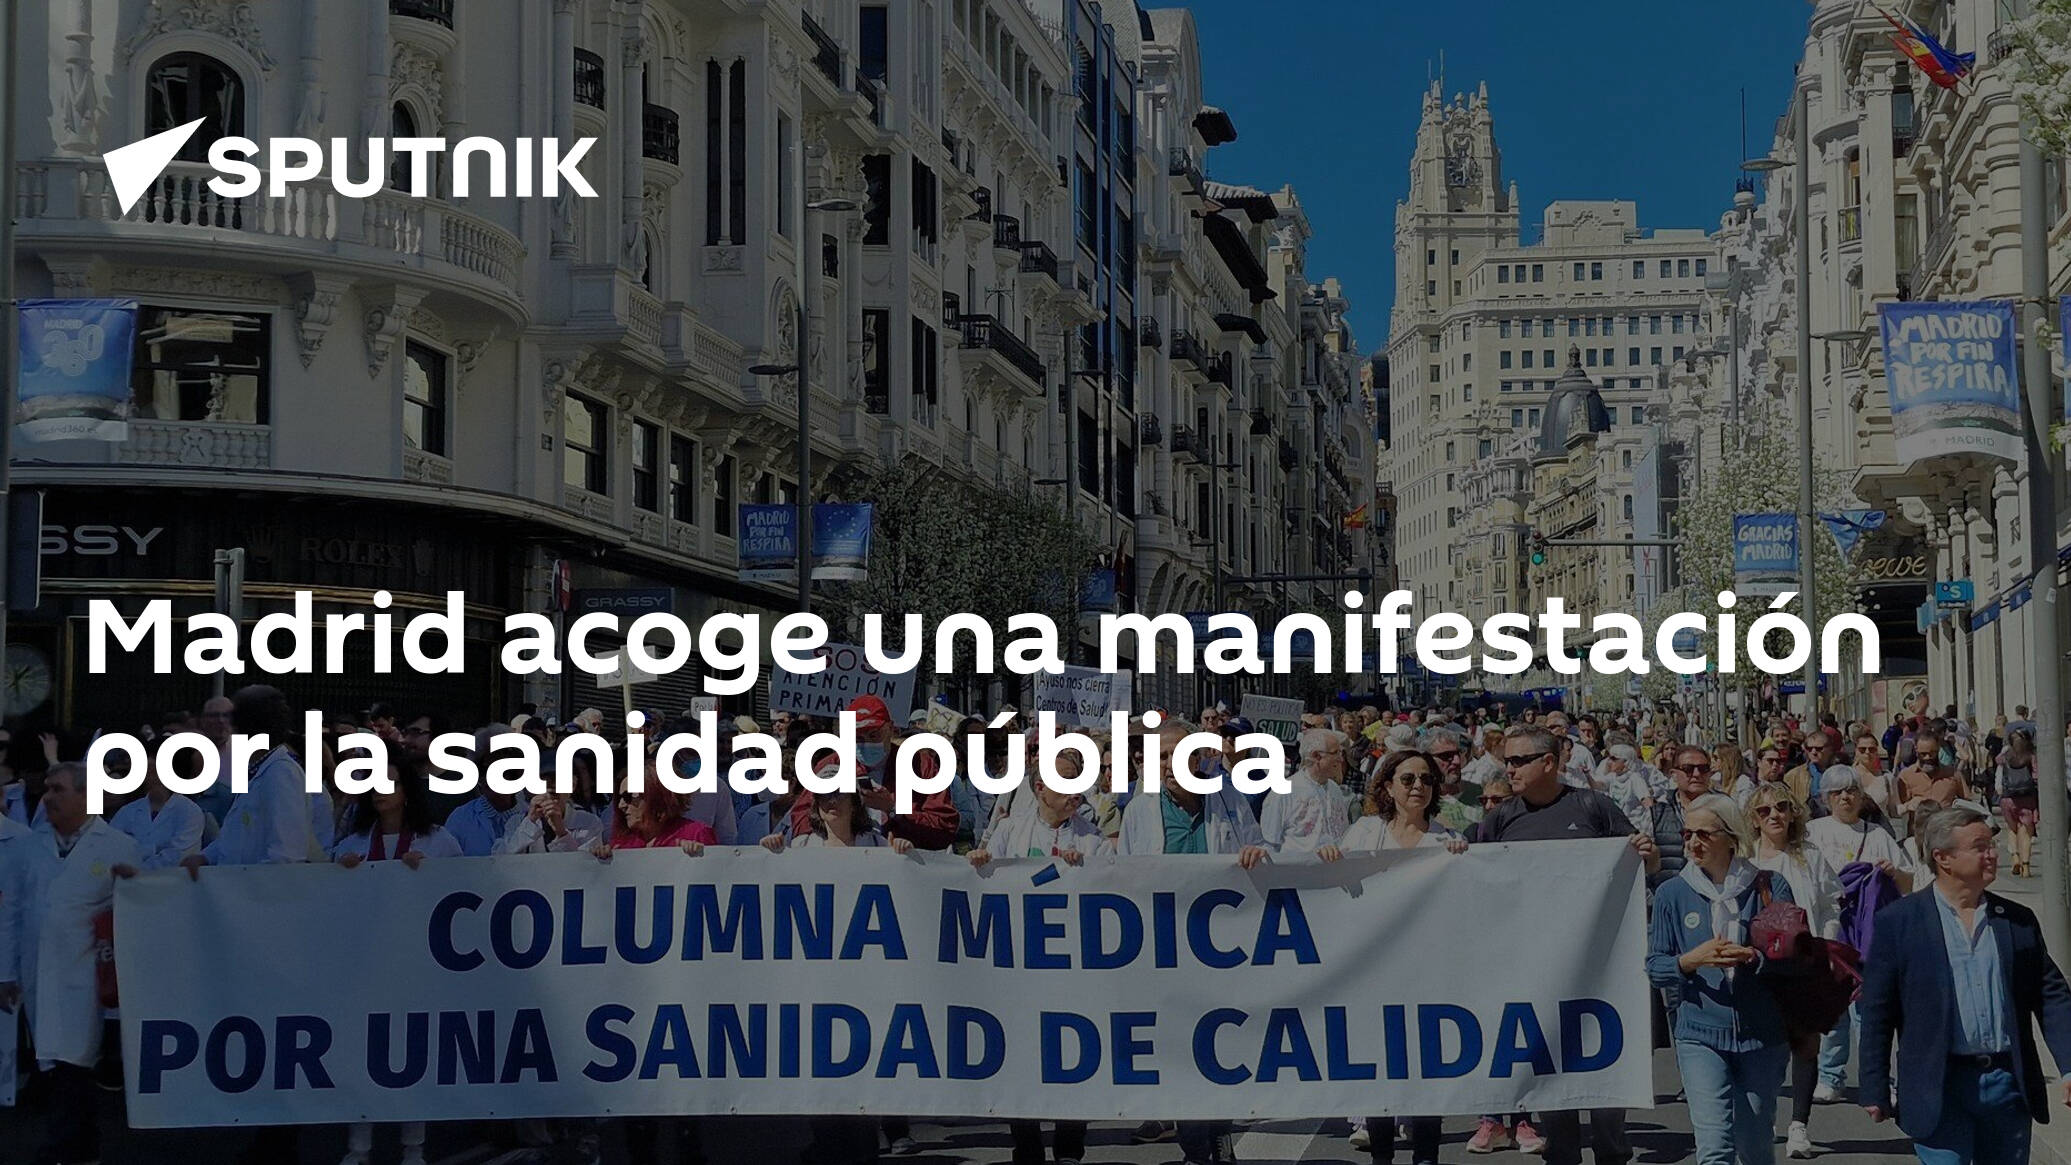 Madrid acoge manifestación por la sanidad pública